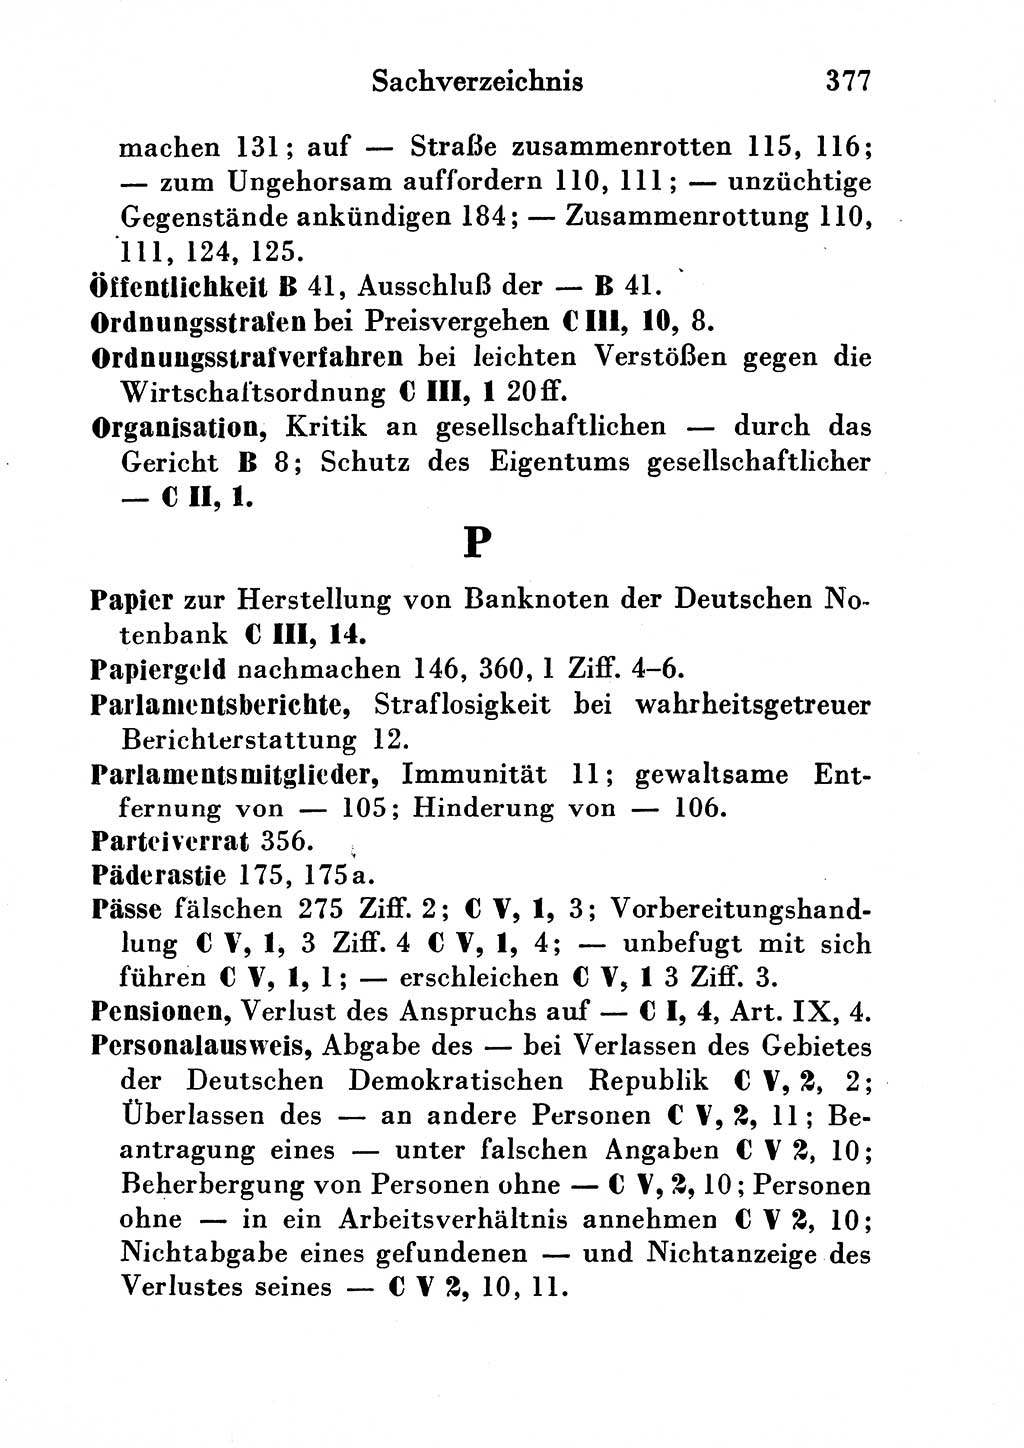 Strafgesetzbuch (StGB) und andere Strafgesetze [Deutsche Demokratische Republik (DDR)] 1954, Seite 377 (StGB Strafges. DDR 1954, S. 377)